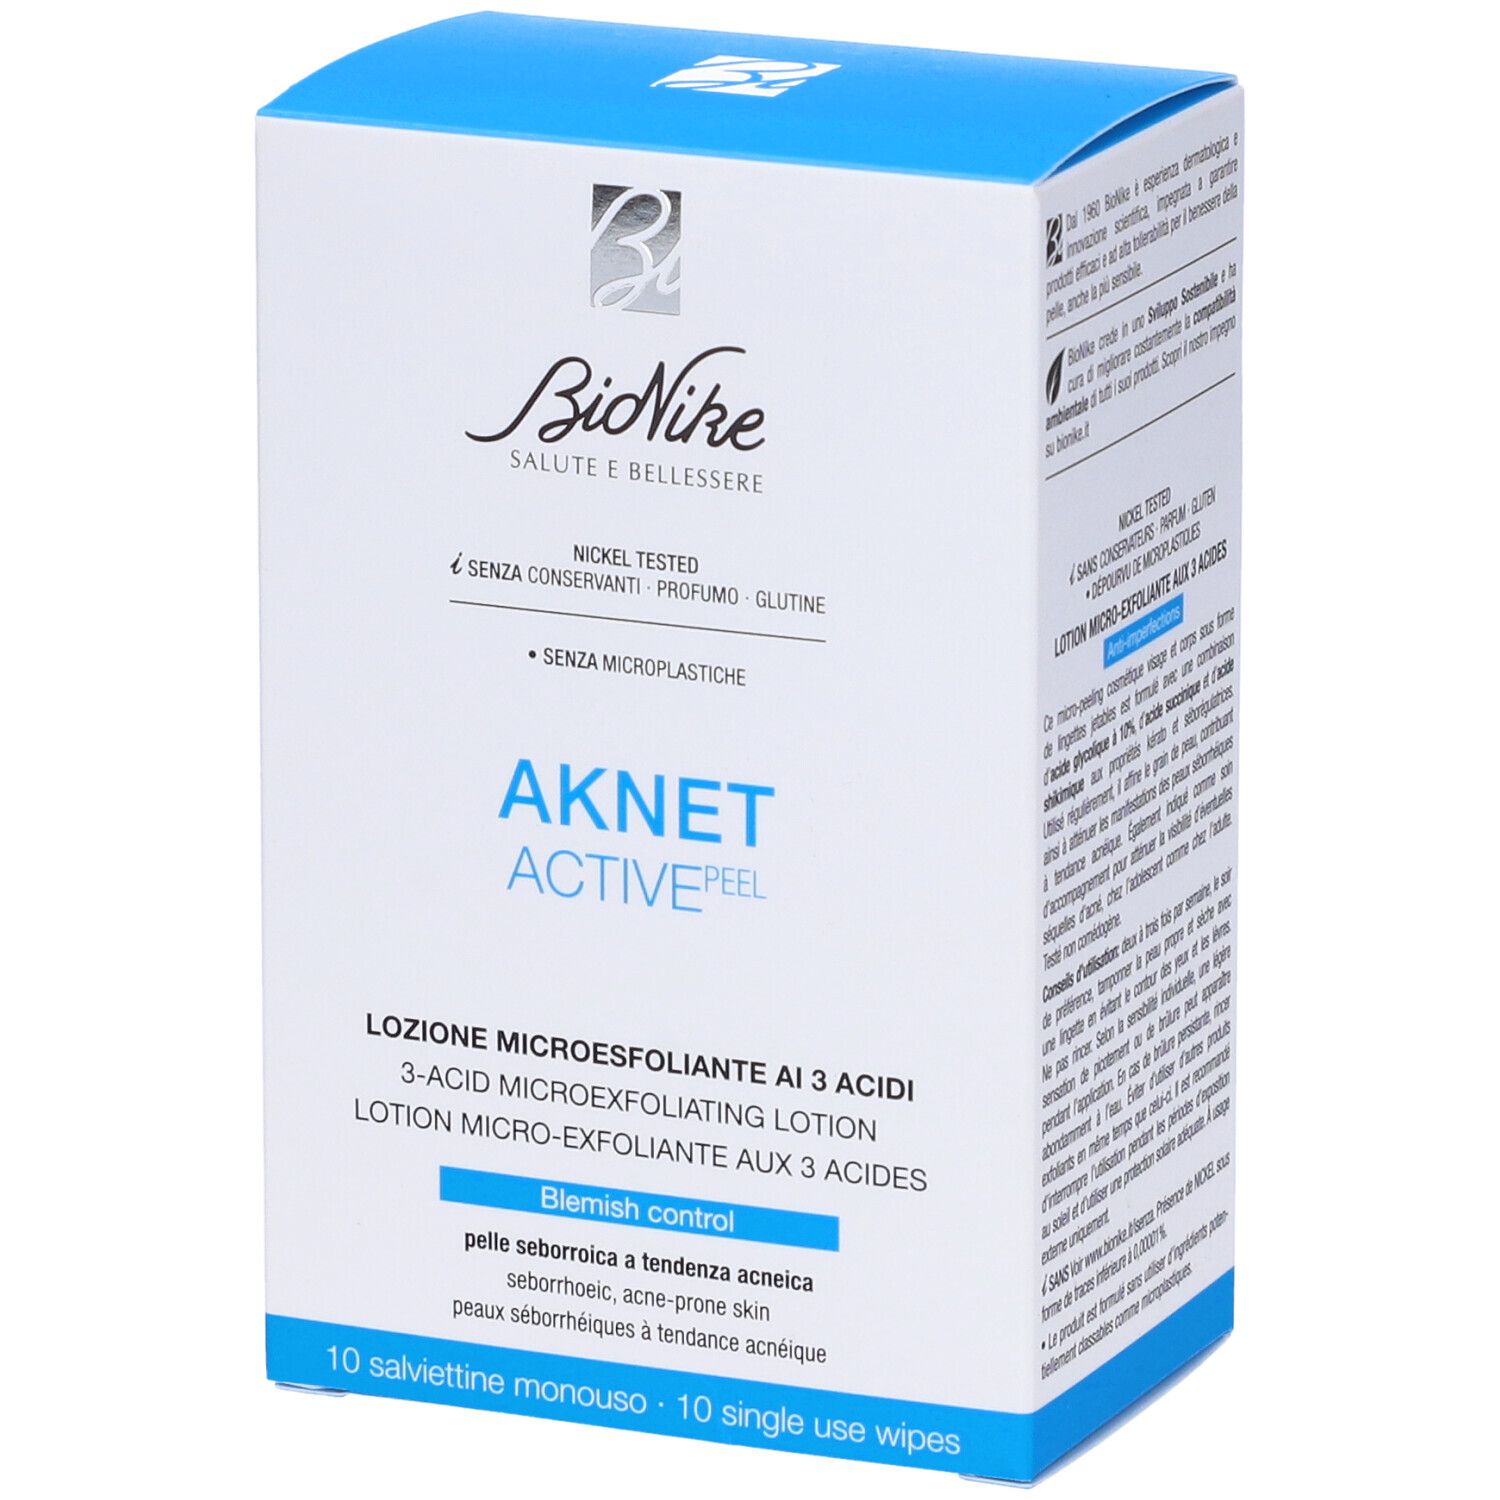 BioNike Aknet Aktive Peel Salviettine Monouso